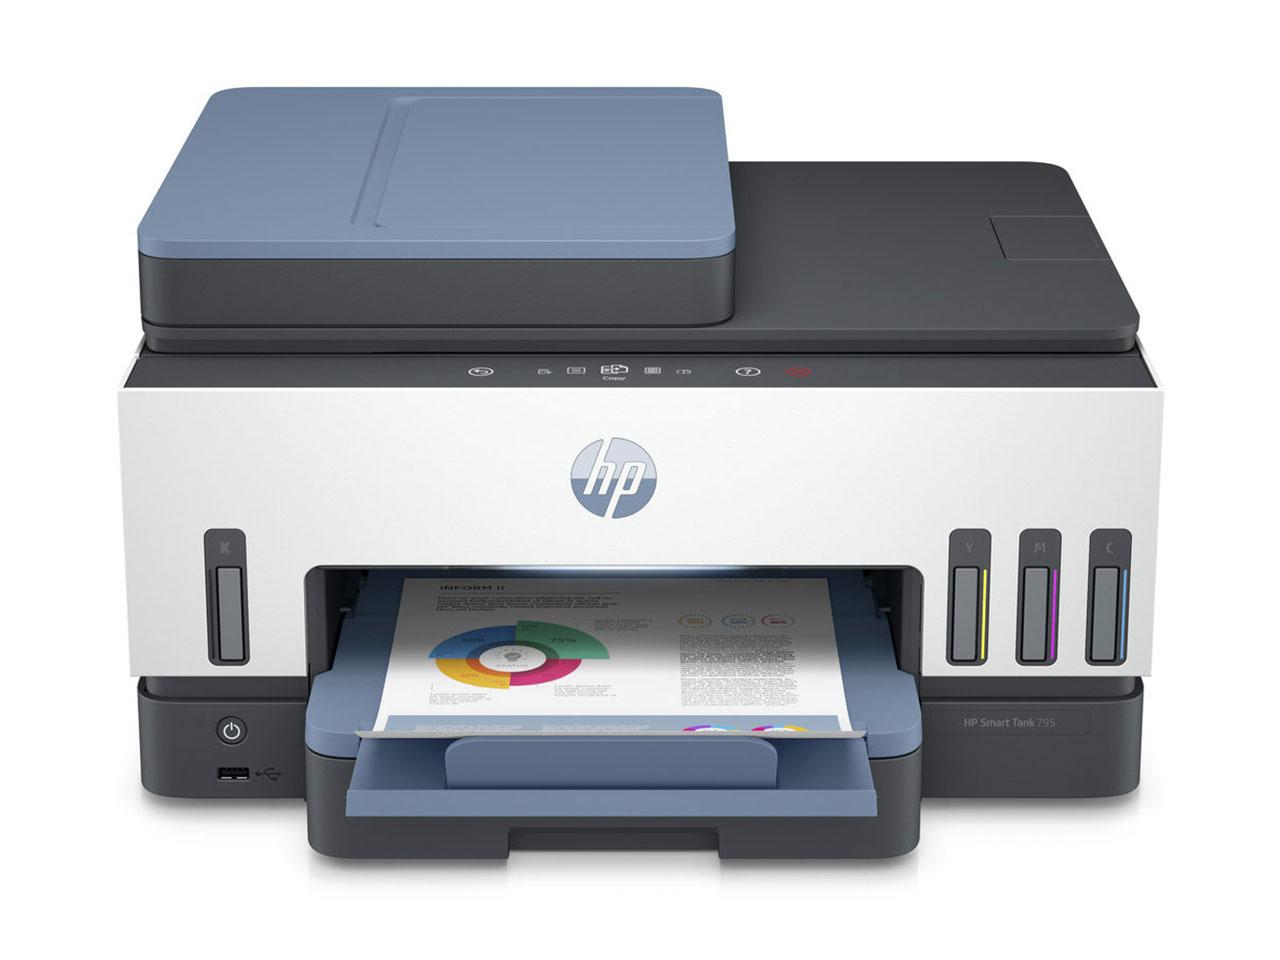 Multifunkční tiskárna HP smart tank 795